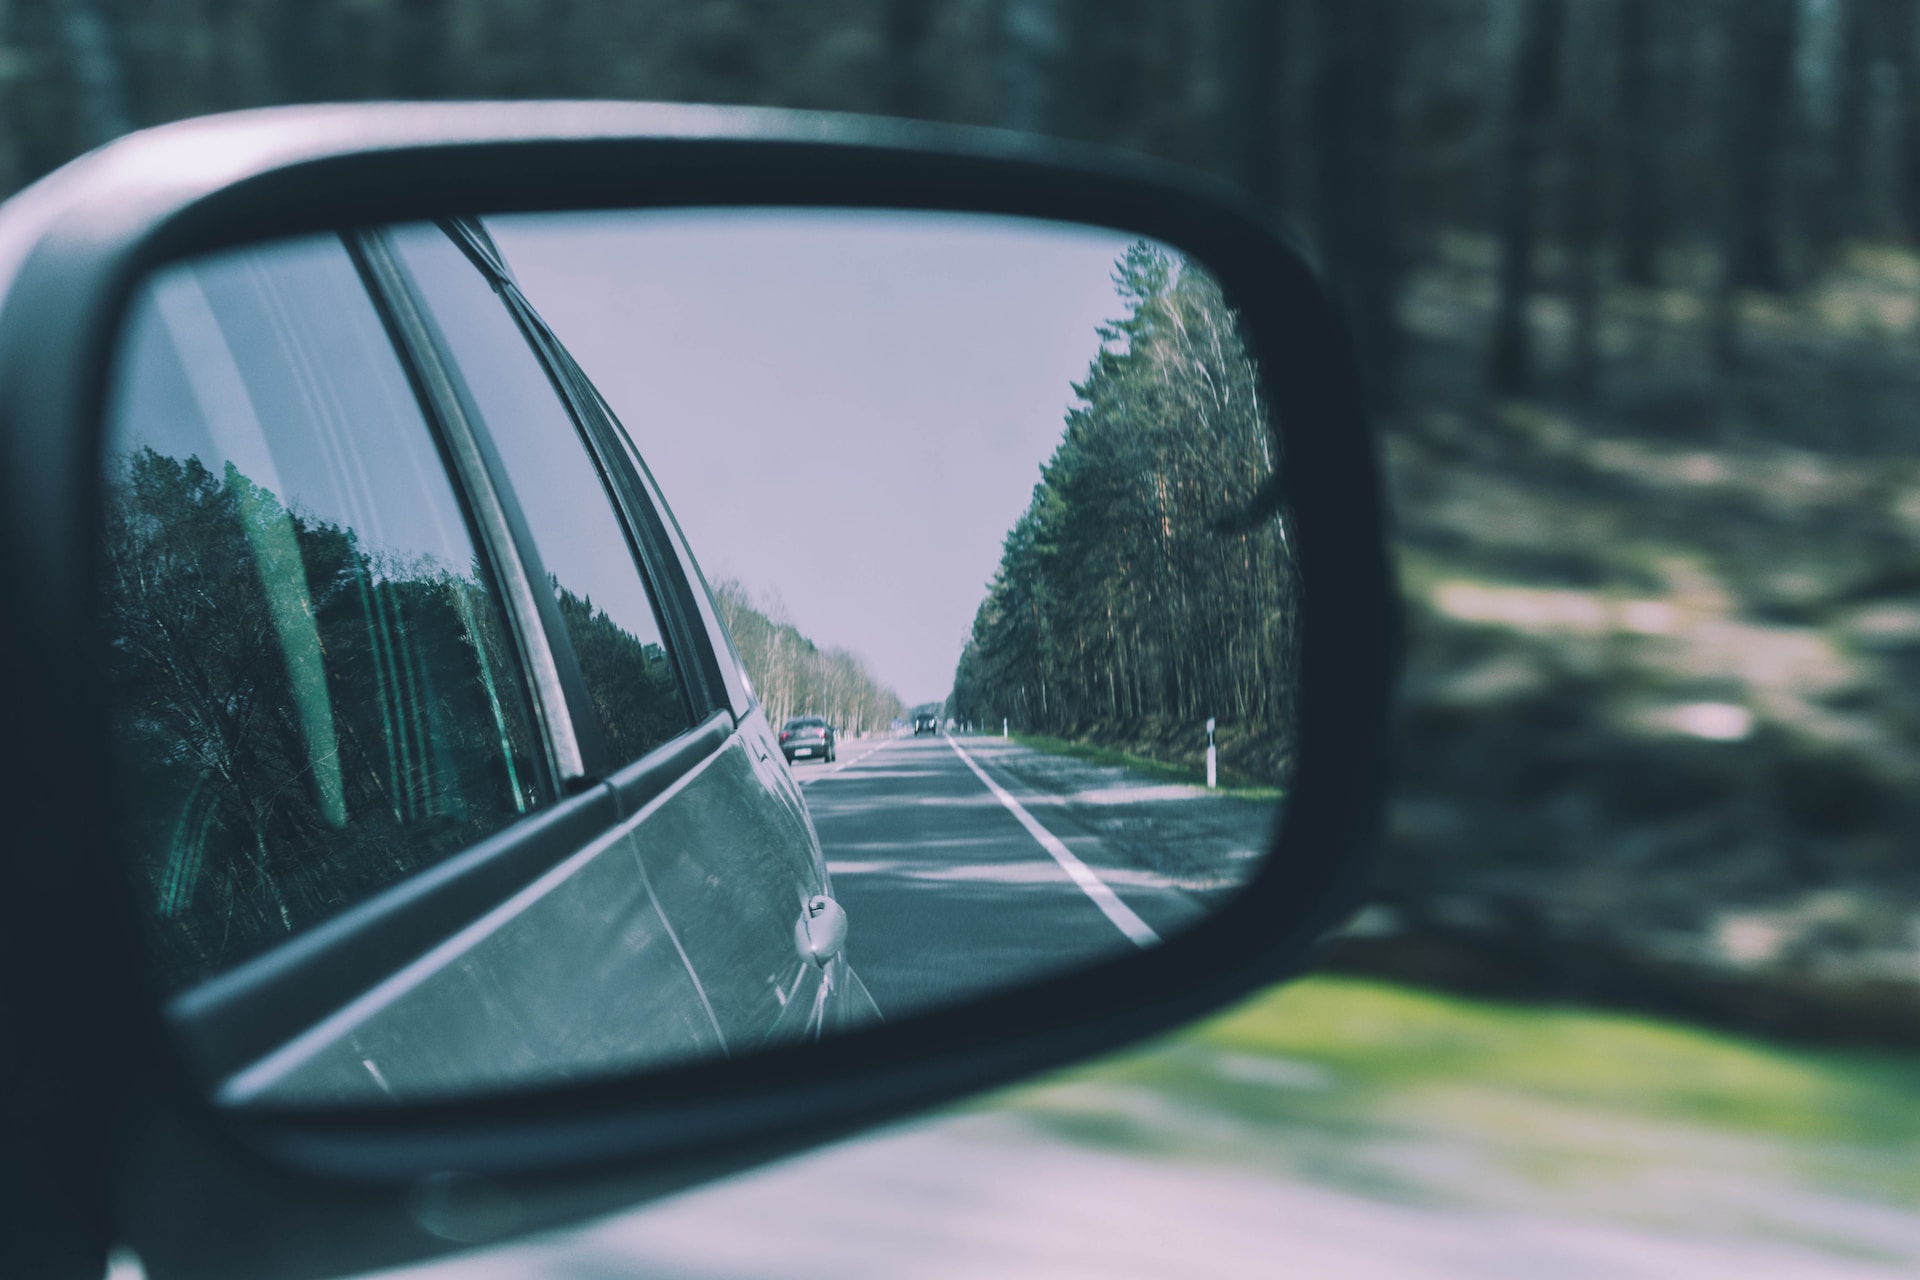 A car rear view mirror